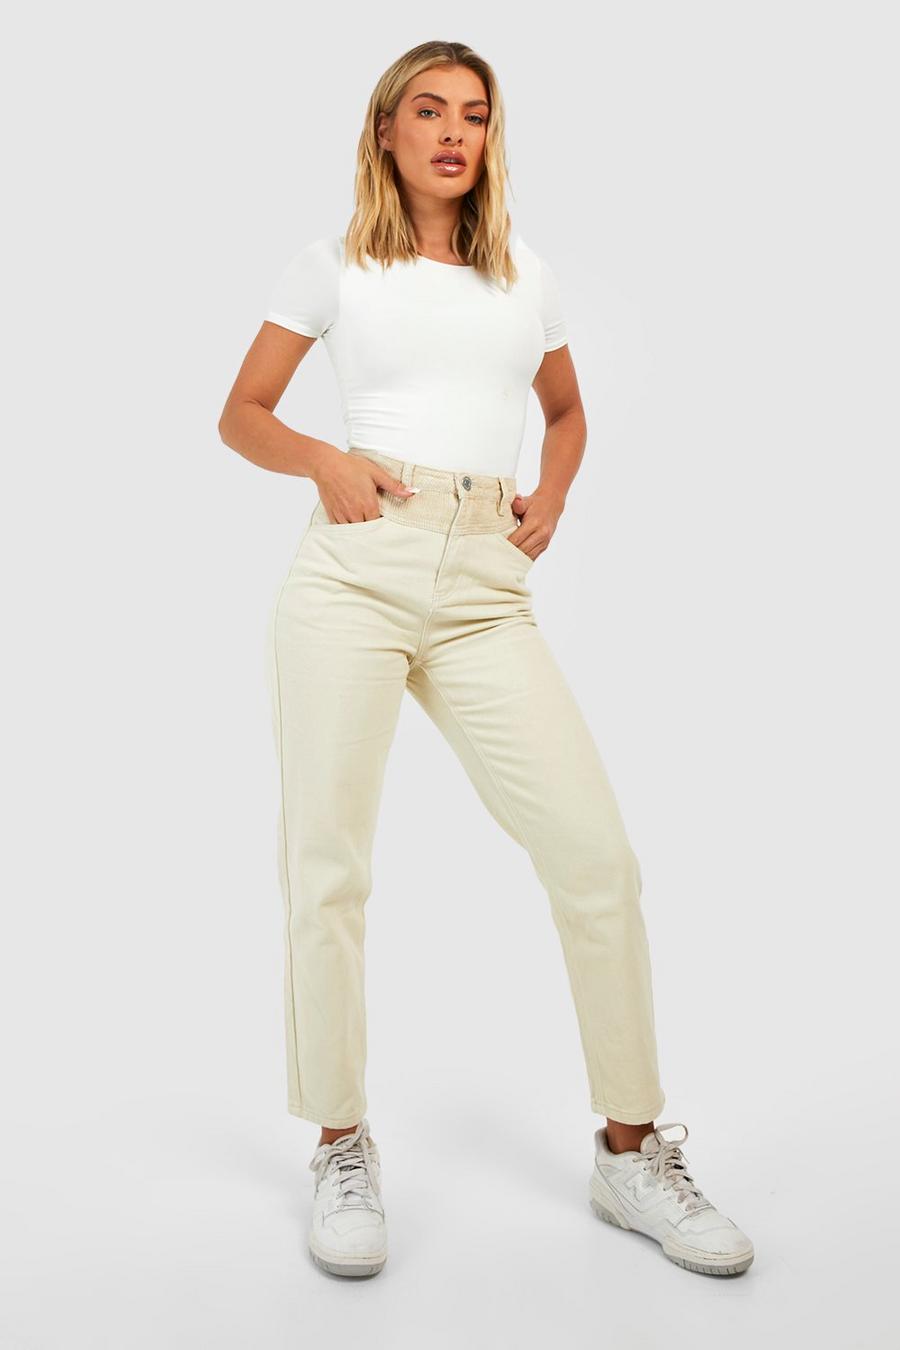 שמנת blanco ג'ינס מאם בגזרה גבוהה עם פאנל ושרוך בצבעים מנוגדים